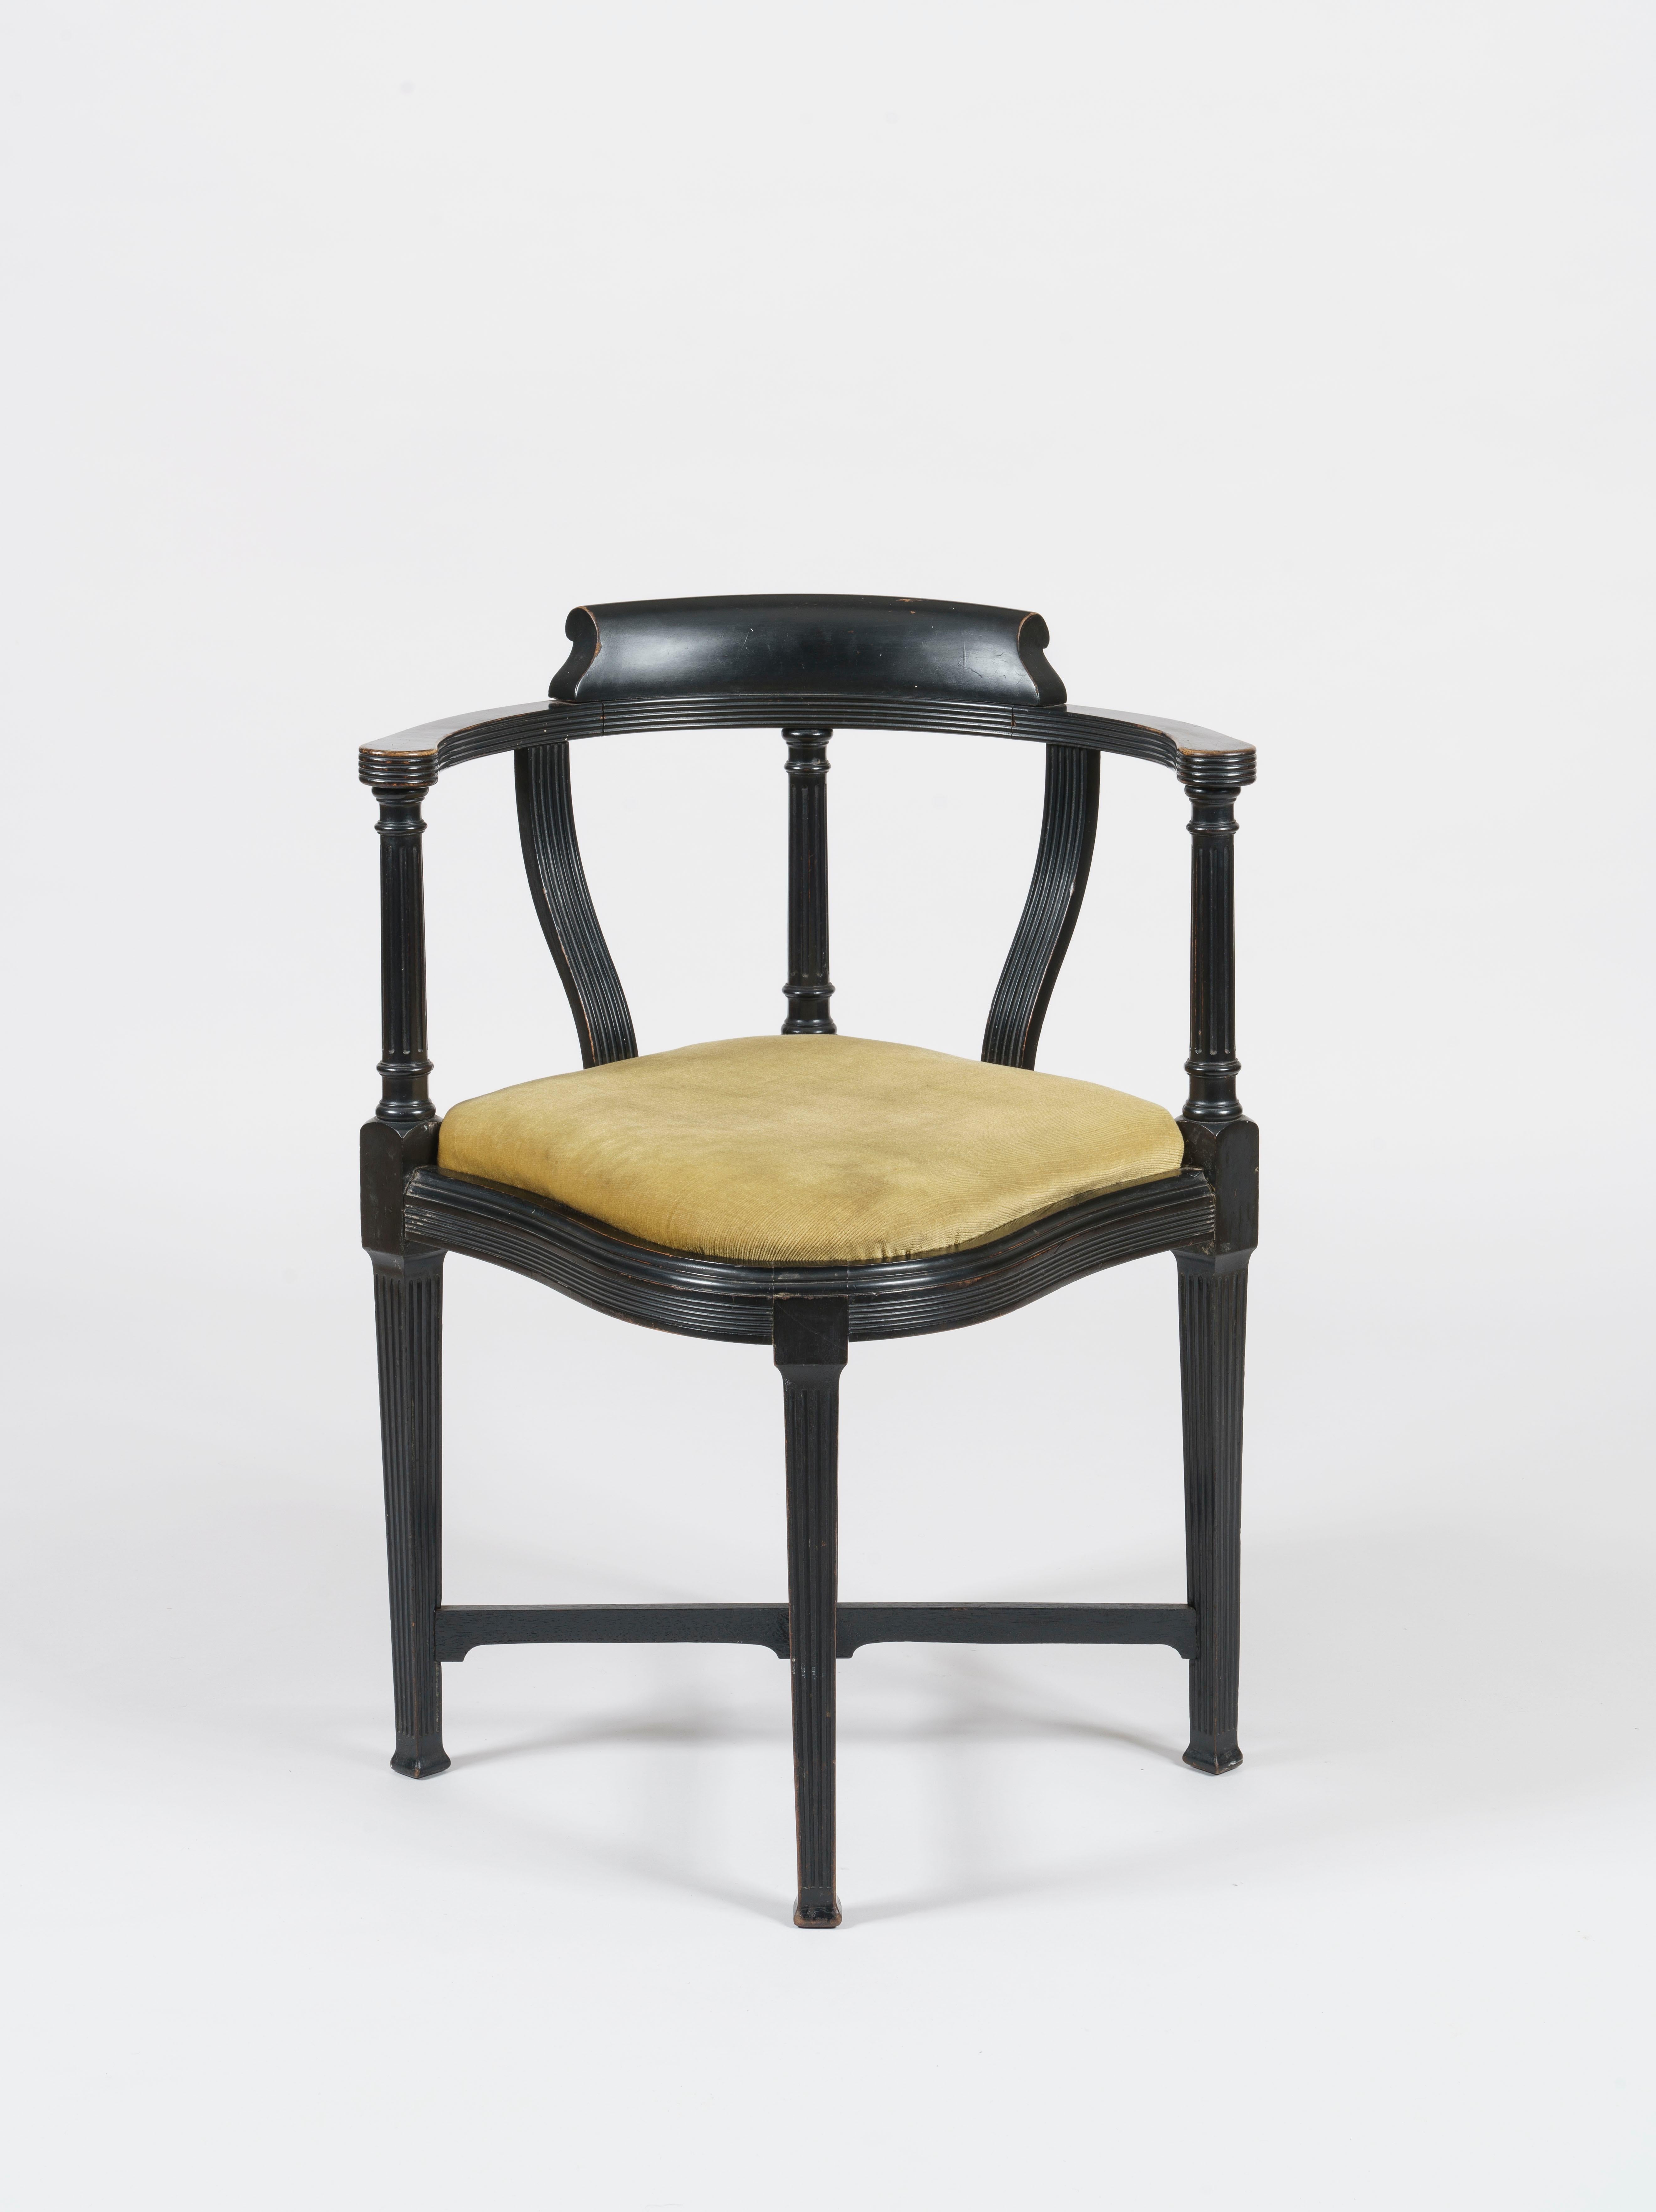 Ein ästhetischer Bewegungsstuhl
Von Lamb of Manchester

entworfen von W.J. Estall

Einzigartig in Eleganz und Design ist der schwarze, ebonisierte Stuhl in der Aesthetic Manier mit geschnitzten Details entlang der Sitzschiene, der Kammschiene und